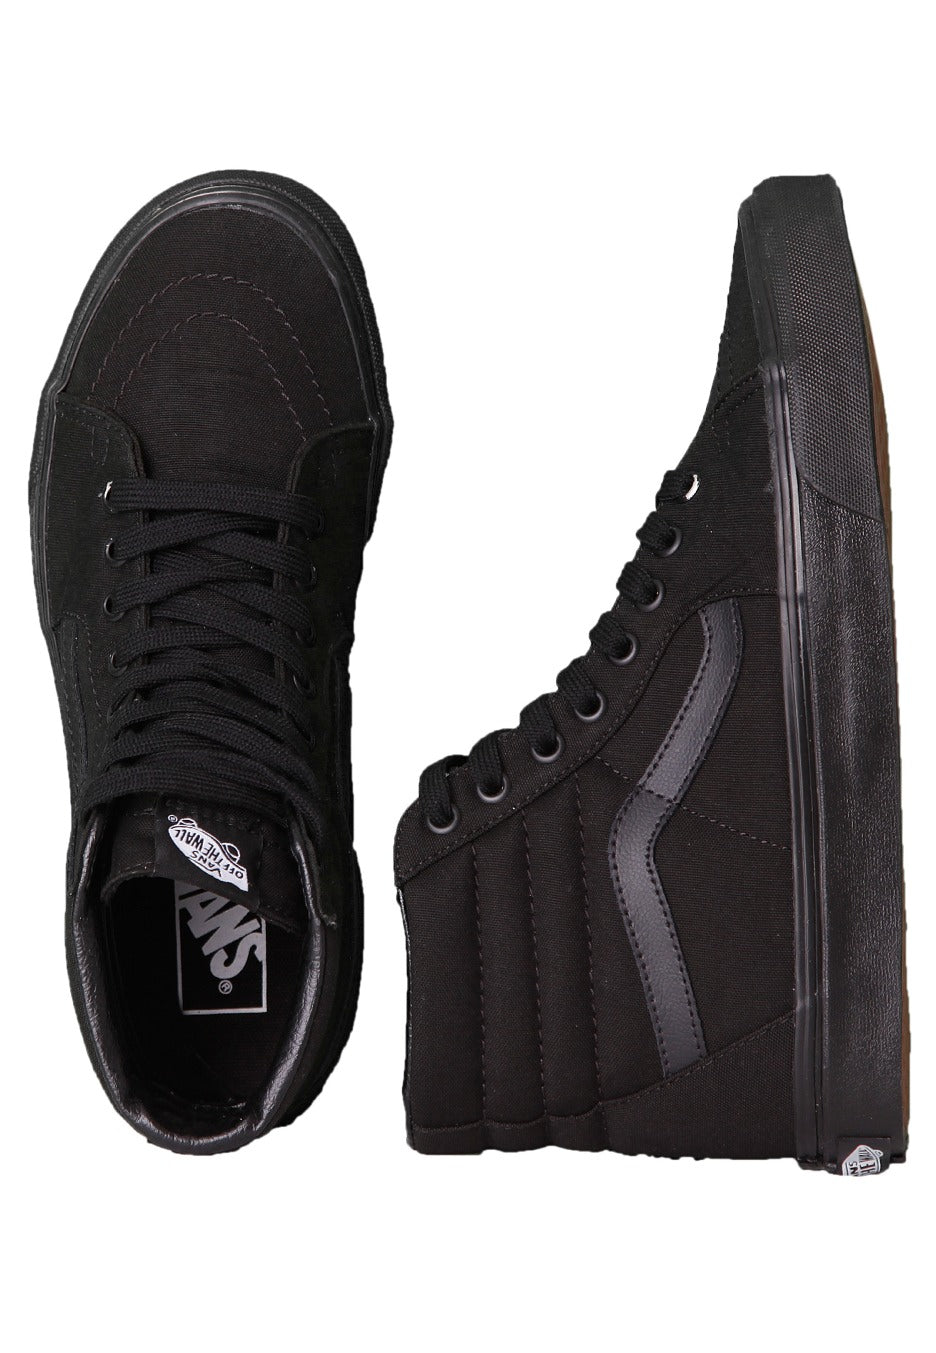 Vans - Sk8-Hi Black/Black/Black - Girl Shoes